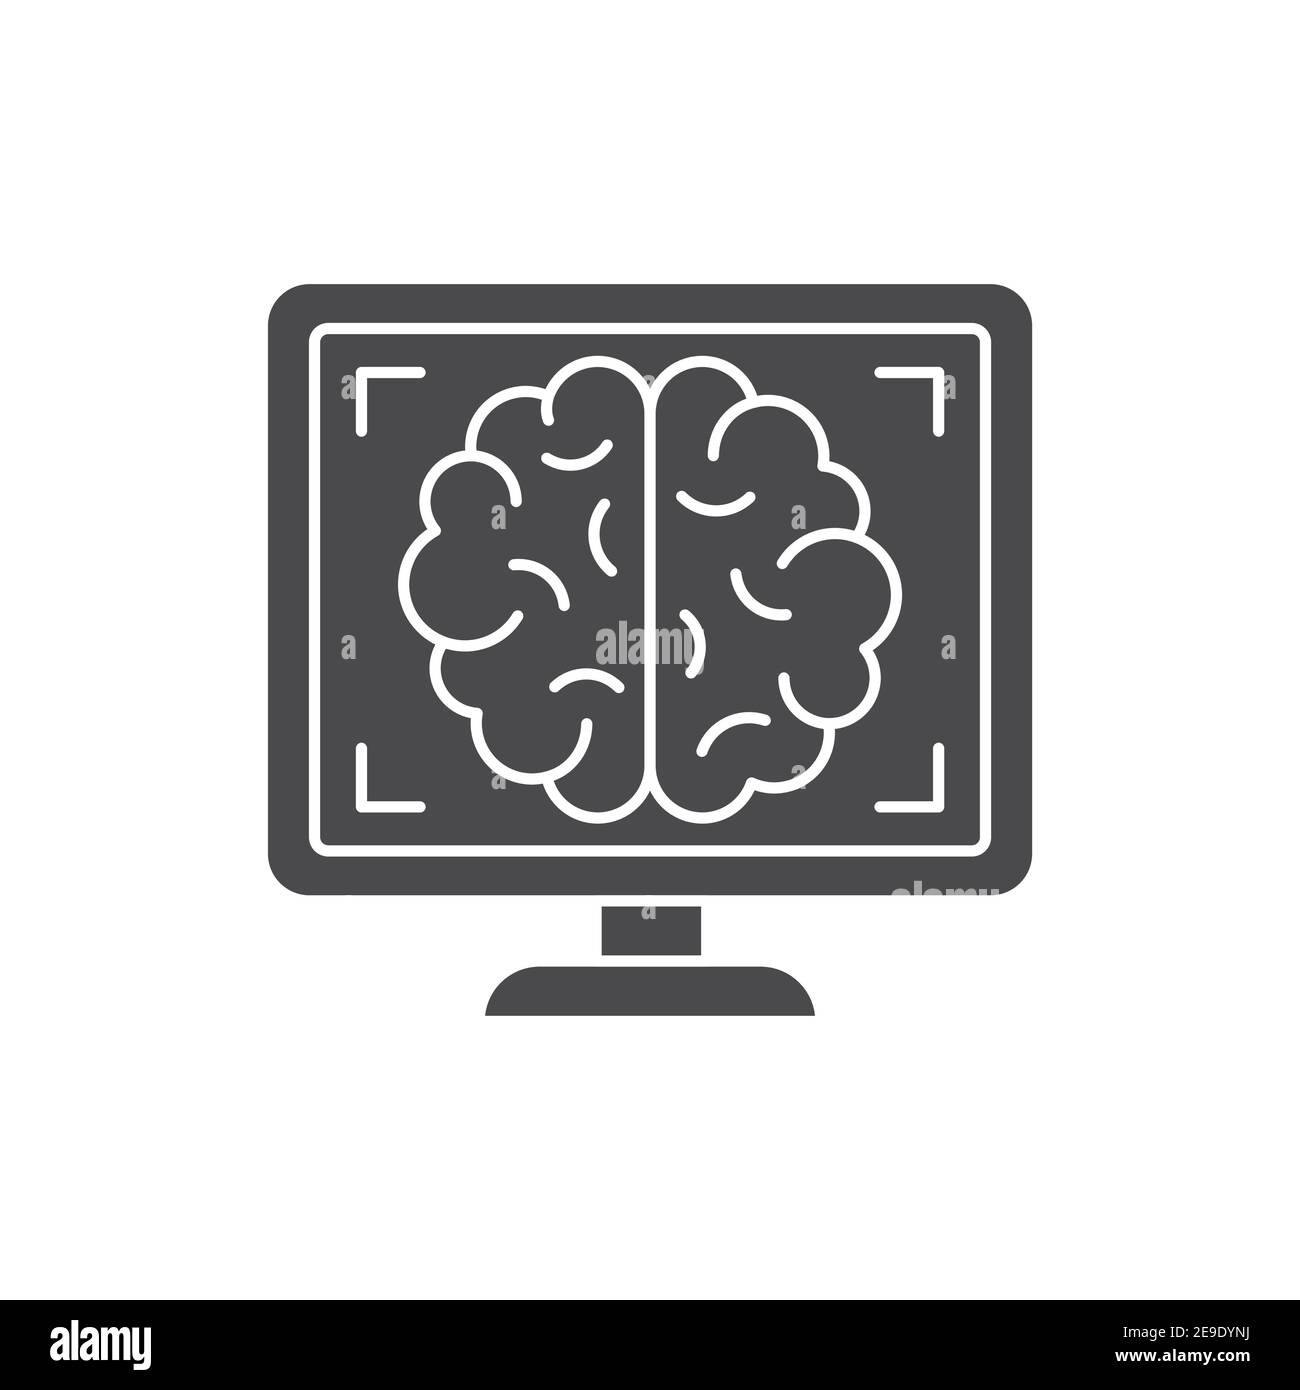 Mri brain black glyph icon. Medical and scientific concept. Laboratory diagnostics. Pictogram for web, mobile app, promo. UI UX design element Stock Vector